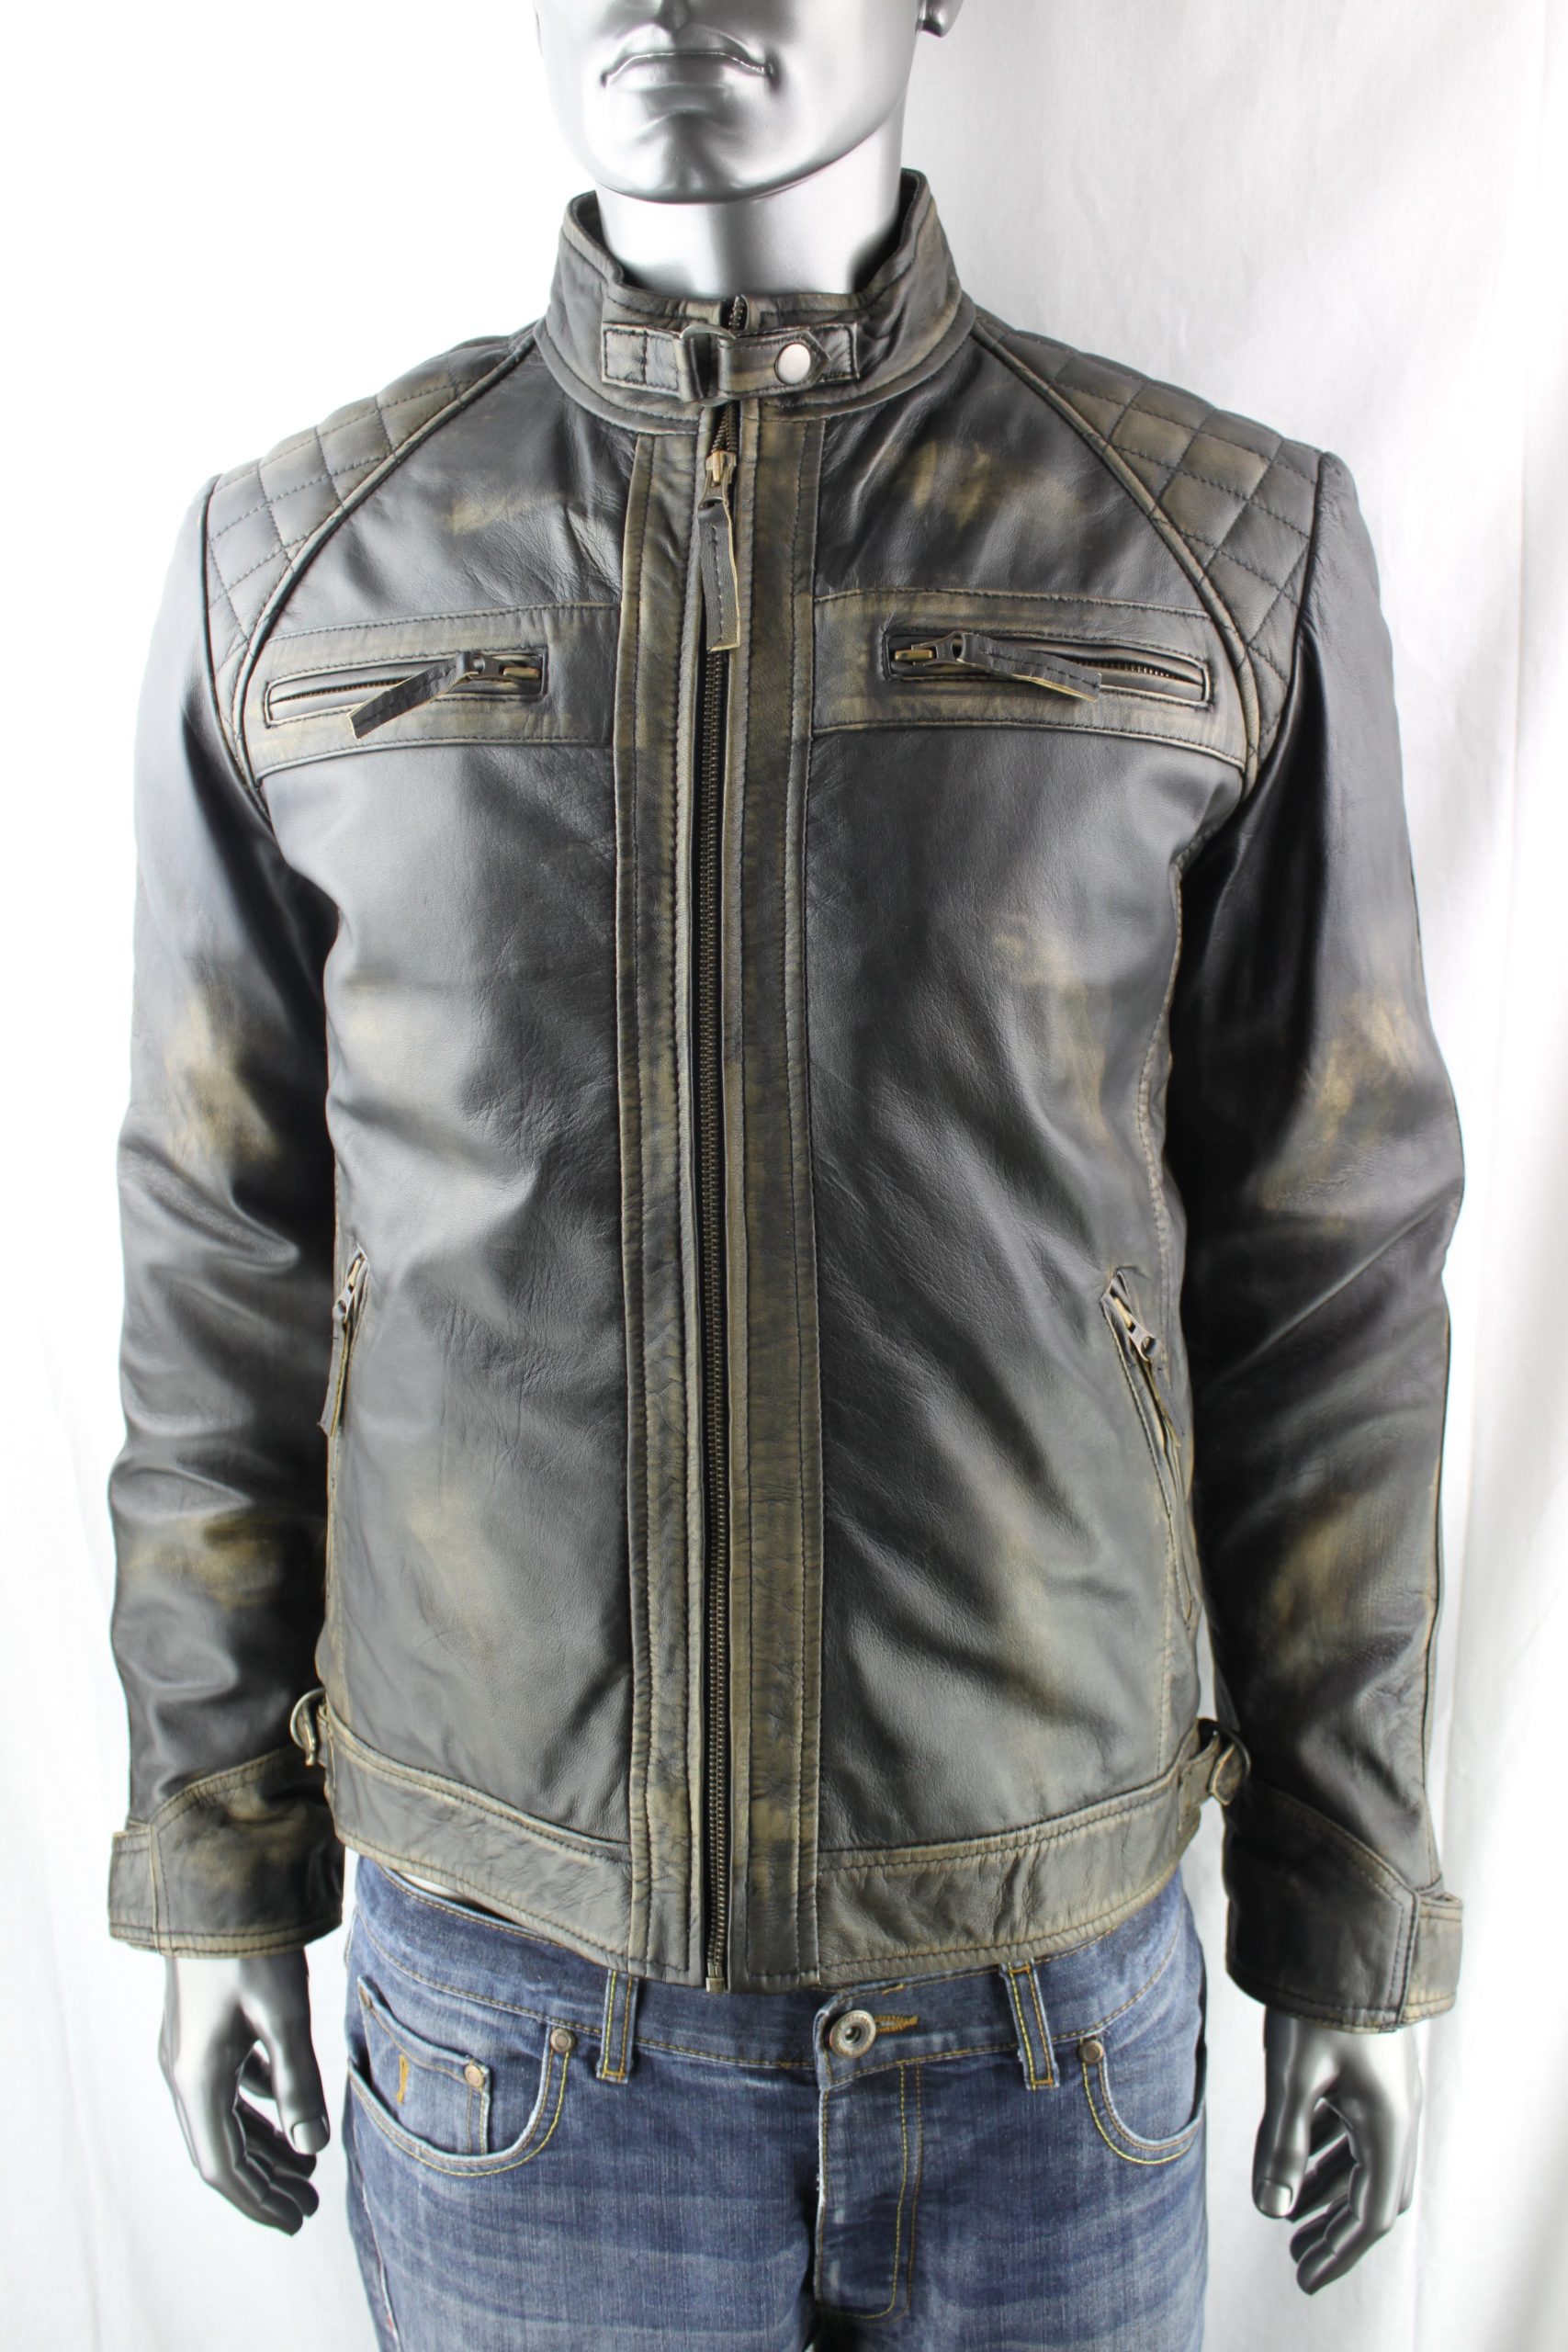 Men's Vintage Leather Biker Jacket in 